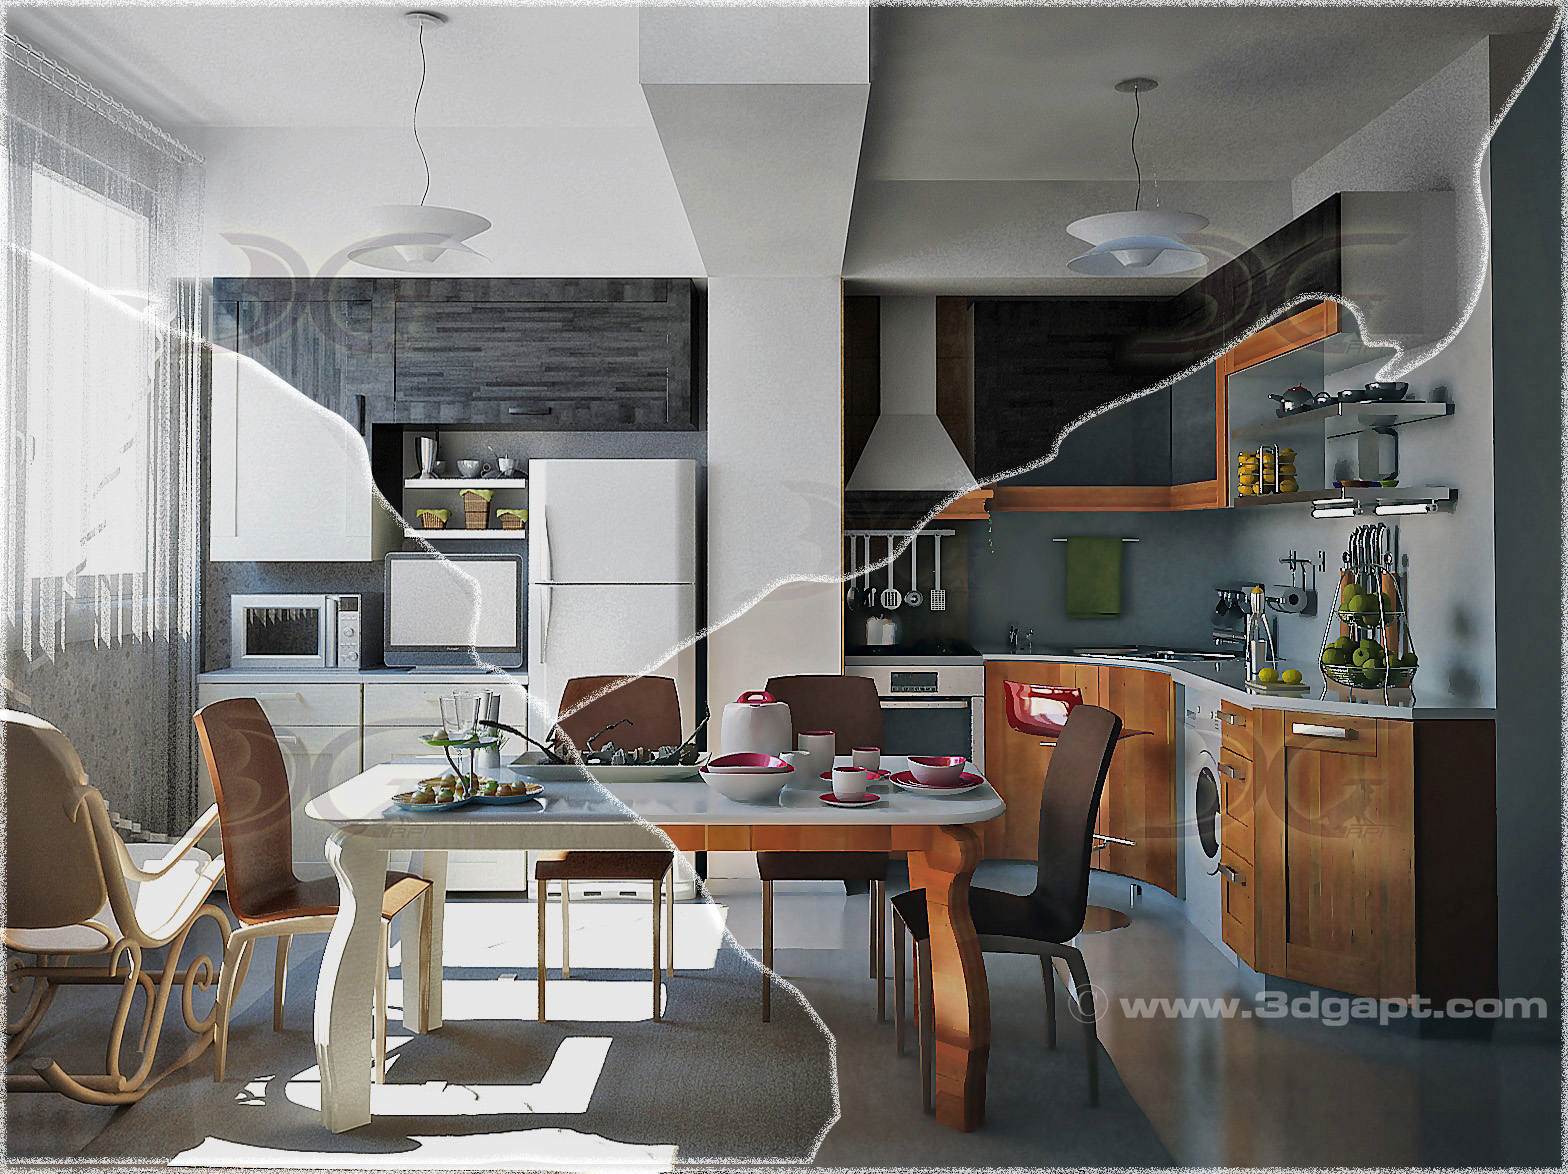 Architecture Interior Kitchen 3versions 1